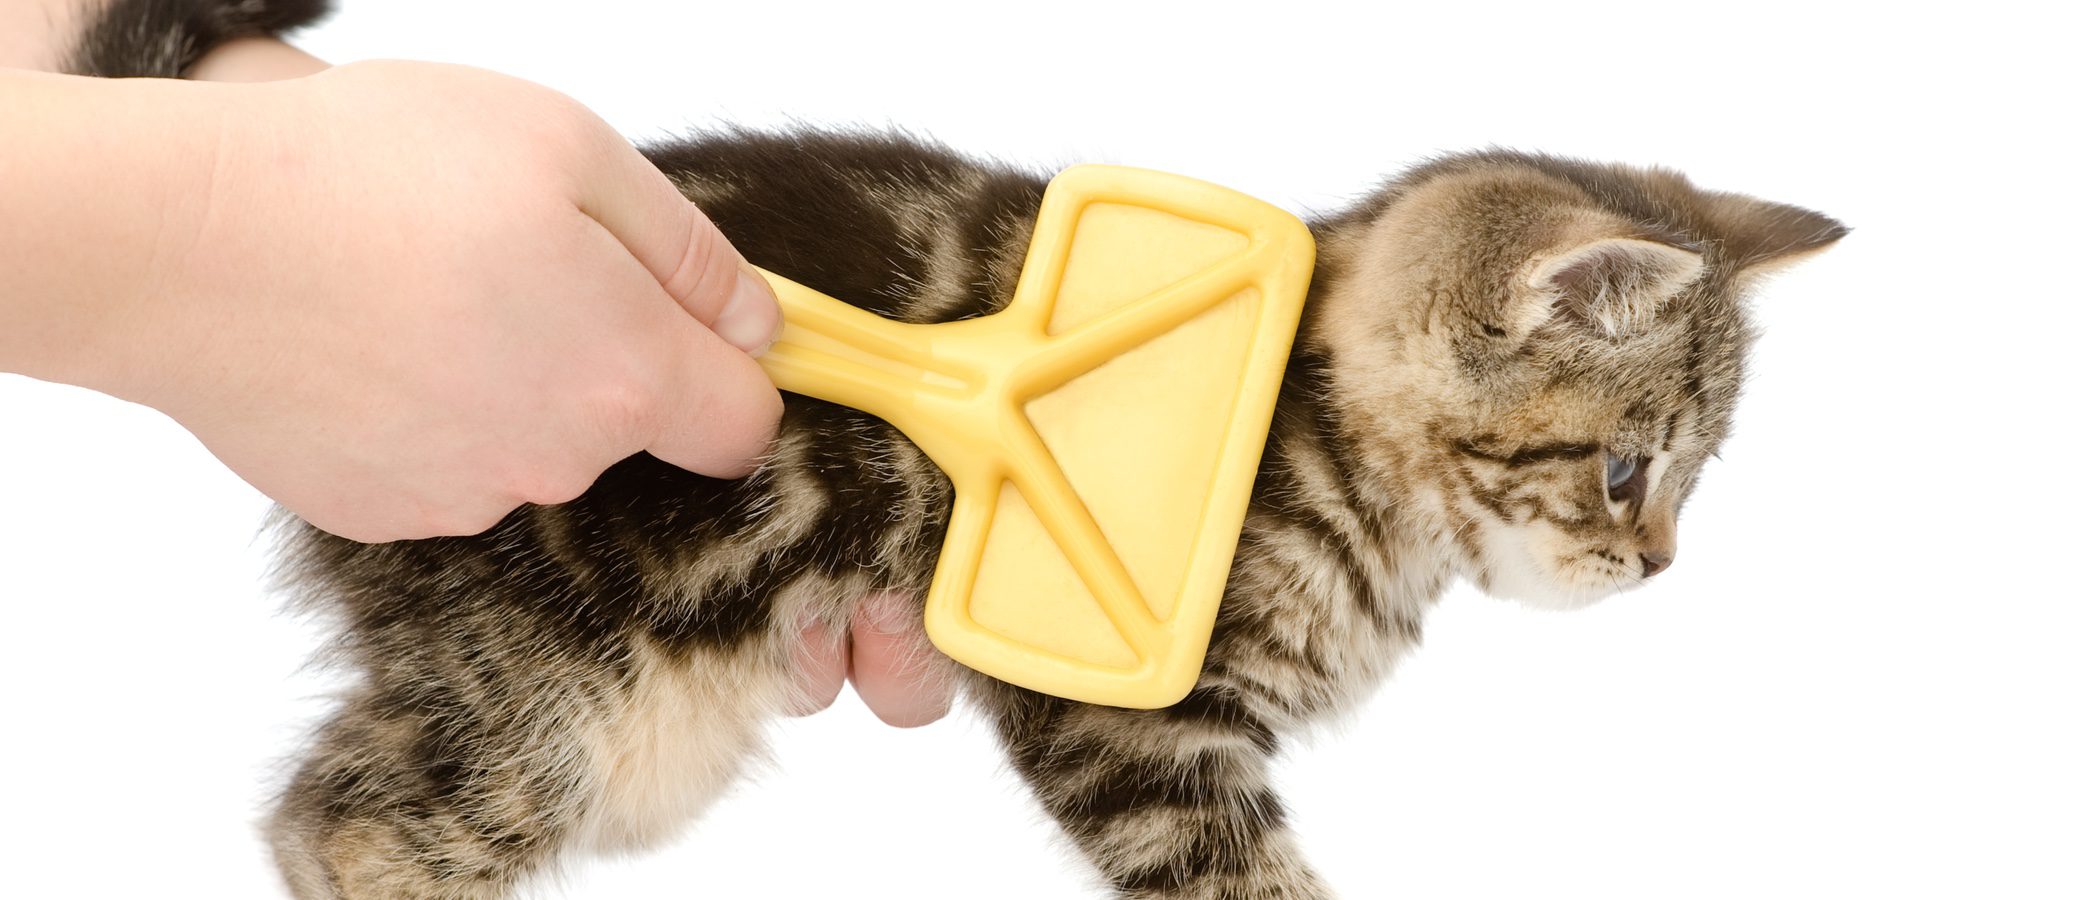 confesar Albany lógica Cómo quitar los nudos en el pelo de un gato - Bekia Mascotas